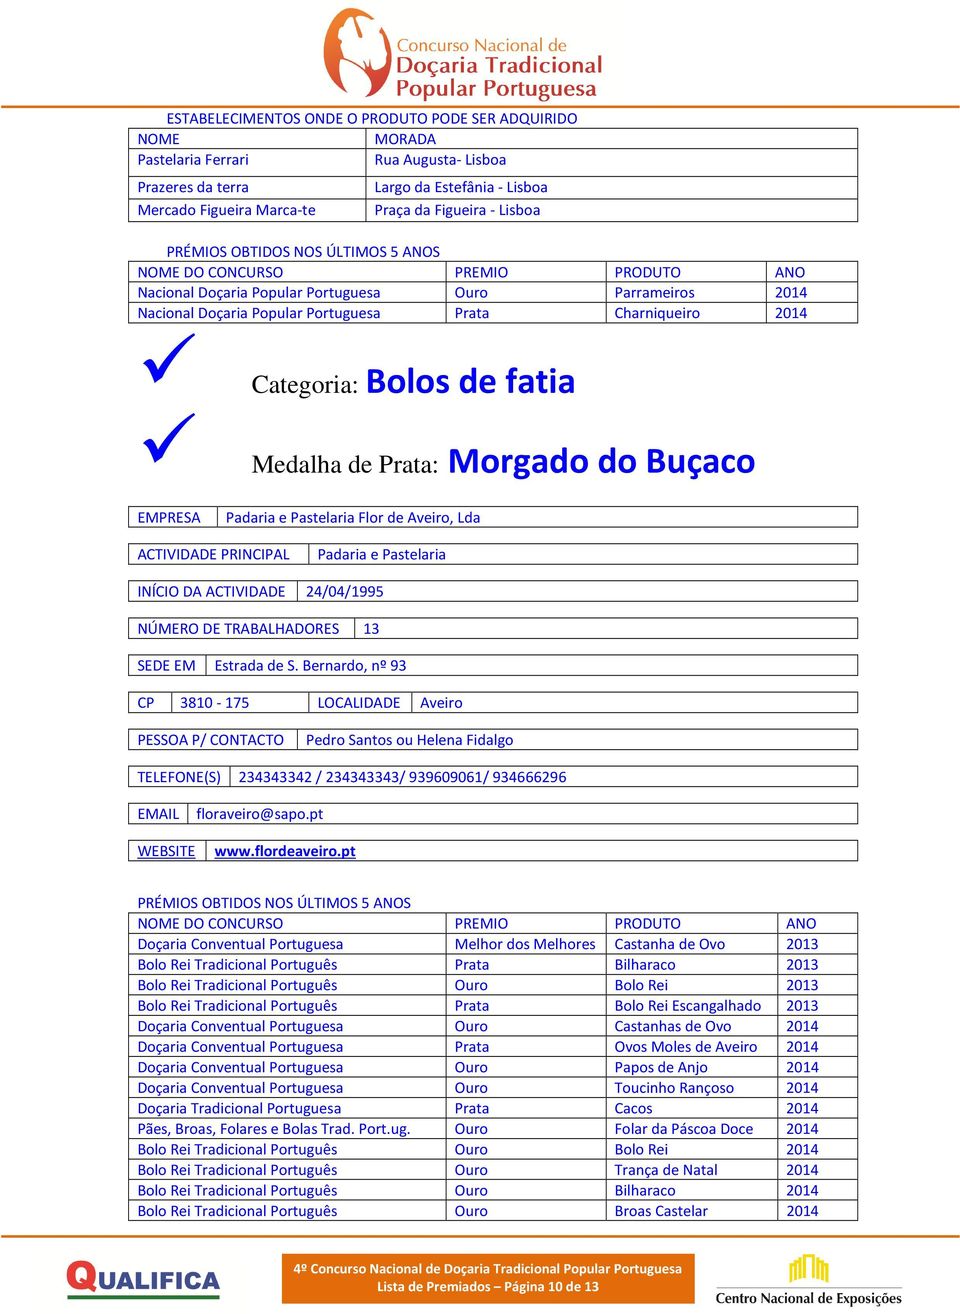 e Pastelaria INÍCIO DA ACTIVIDADE 24/04/1995 NÚMERO DE TRABALHADORES 13 SEDE EM Estrada de S.